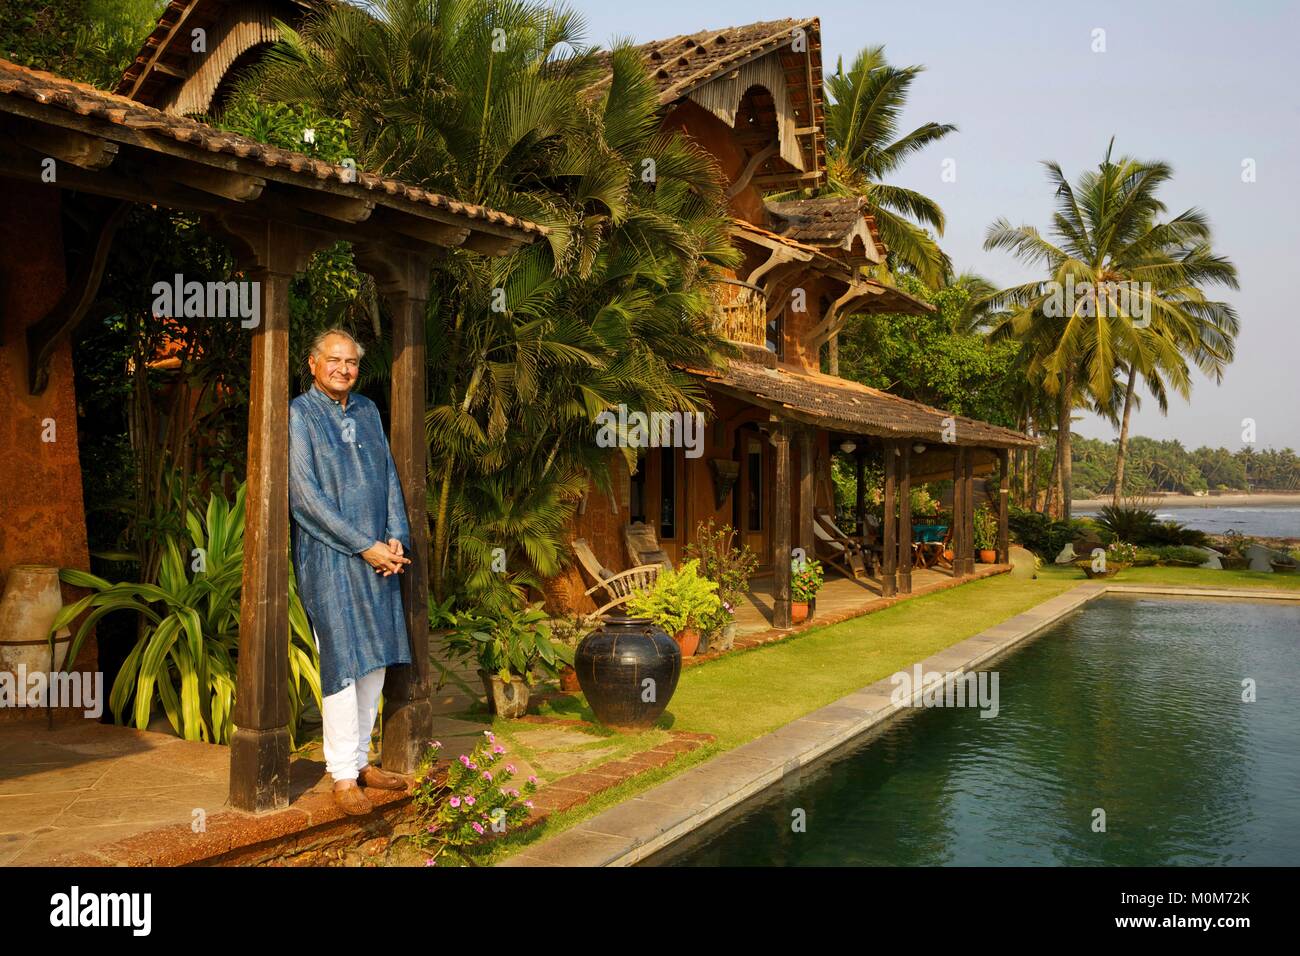 L'India,Goa,Coco Beach,Richard Holkar,figlio del maharadjah di Indore,di fronte al suo albergo di lusso Ahilya dal mare con la sua piscina,di fronte ad una spiaggia fiancheggiato da alberi di noce di cocco Foto Stock